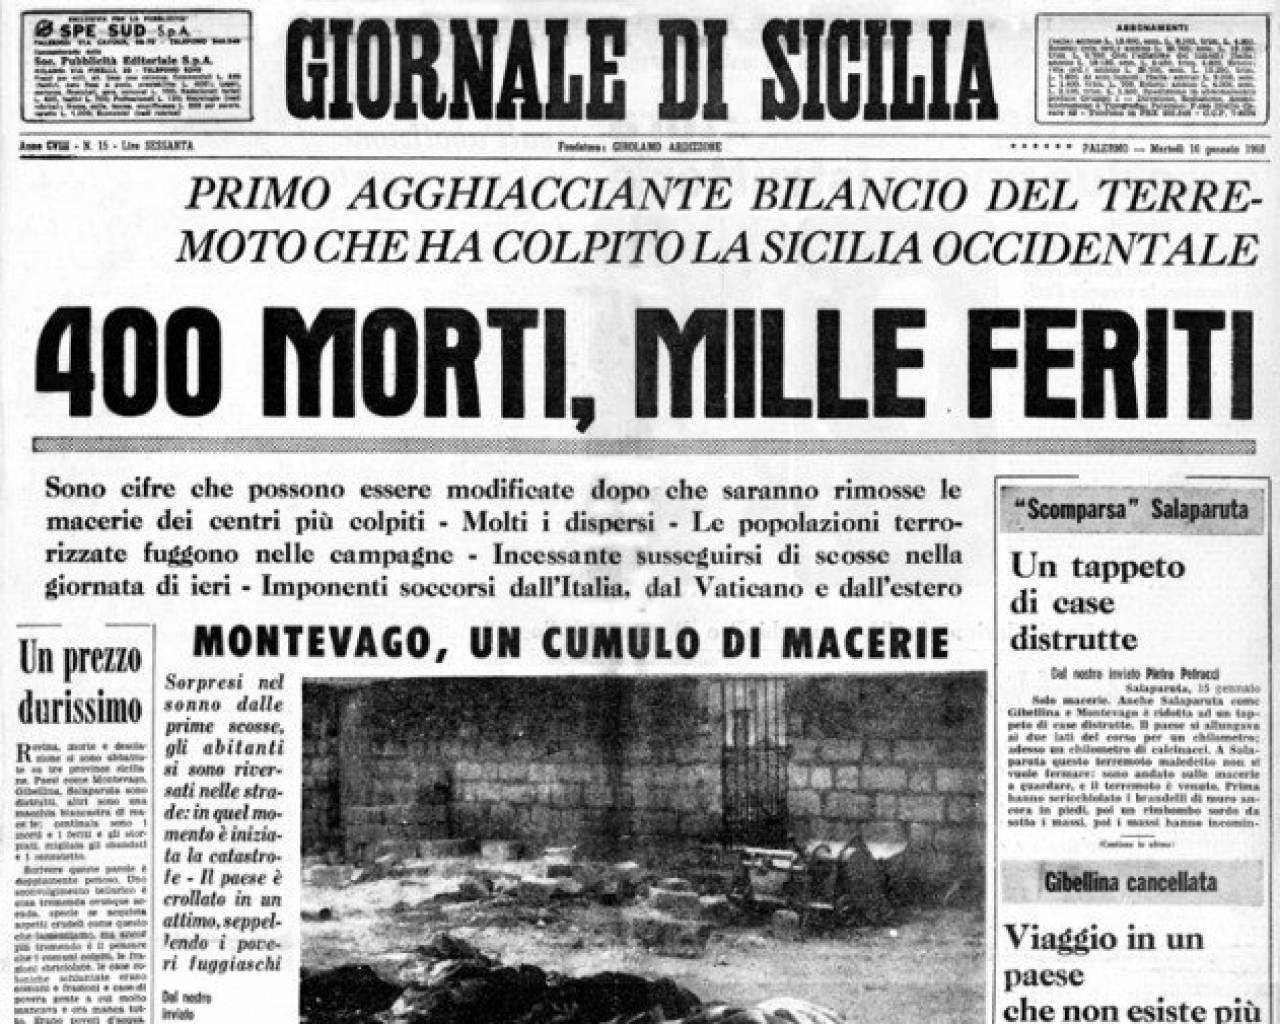 Terremoto giornale di sicilia prima pagina